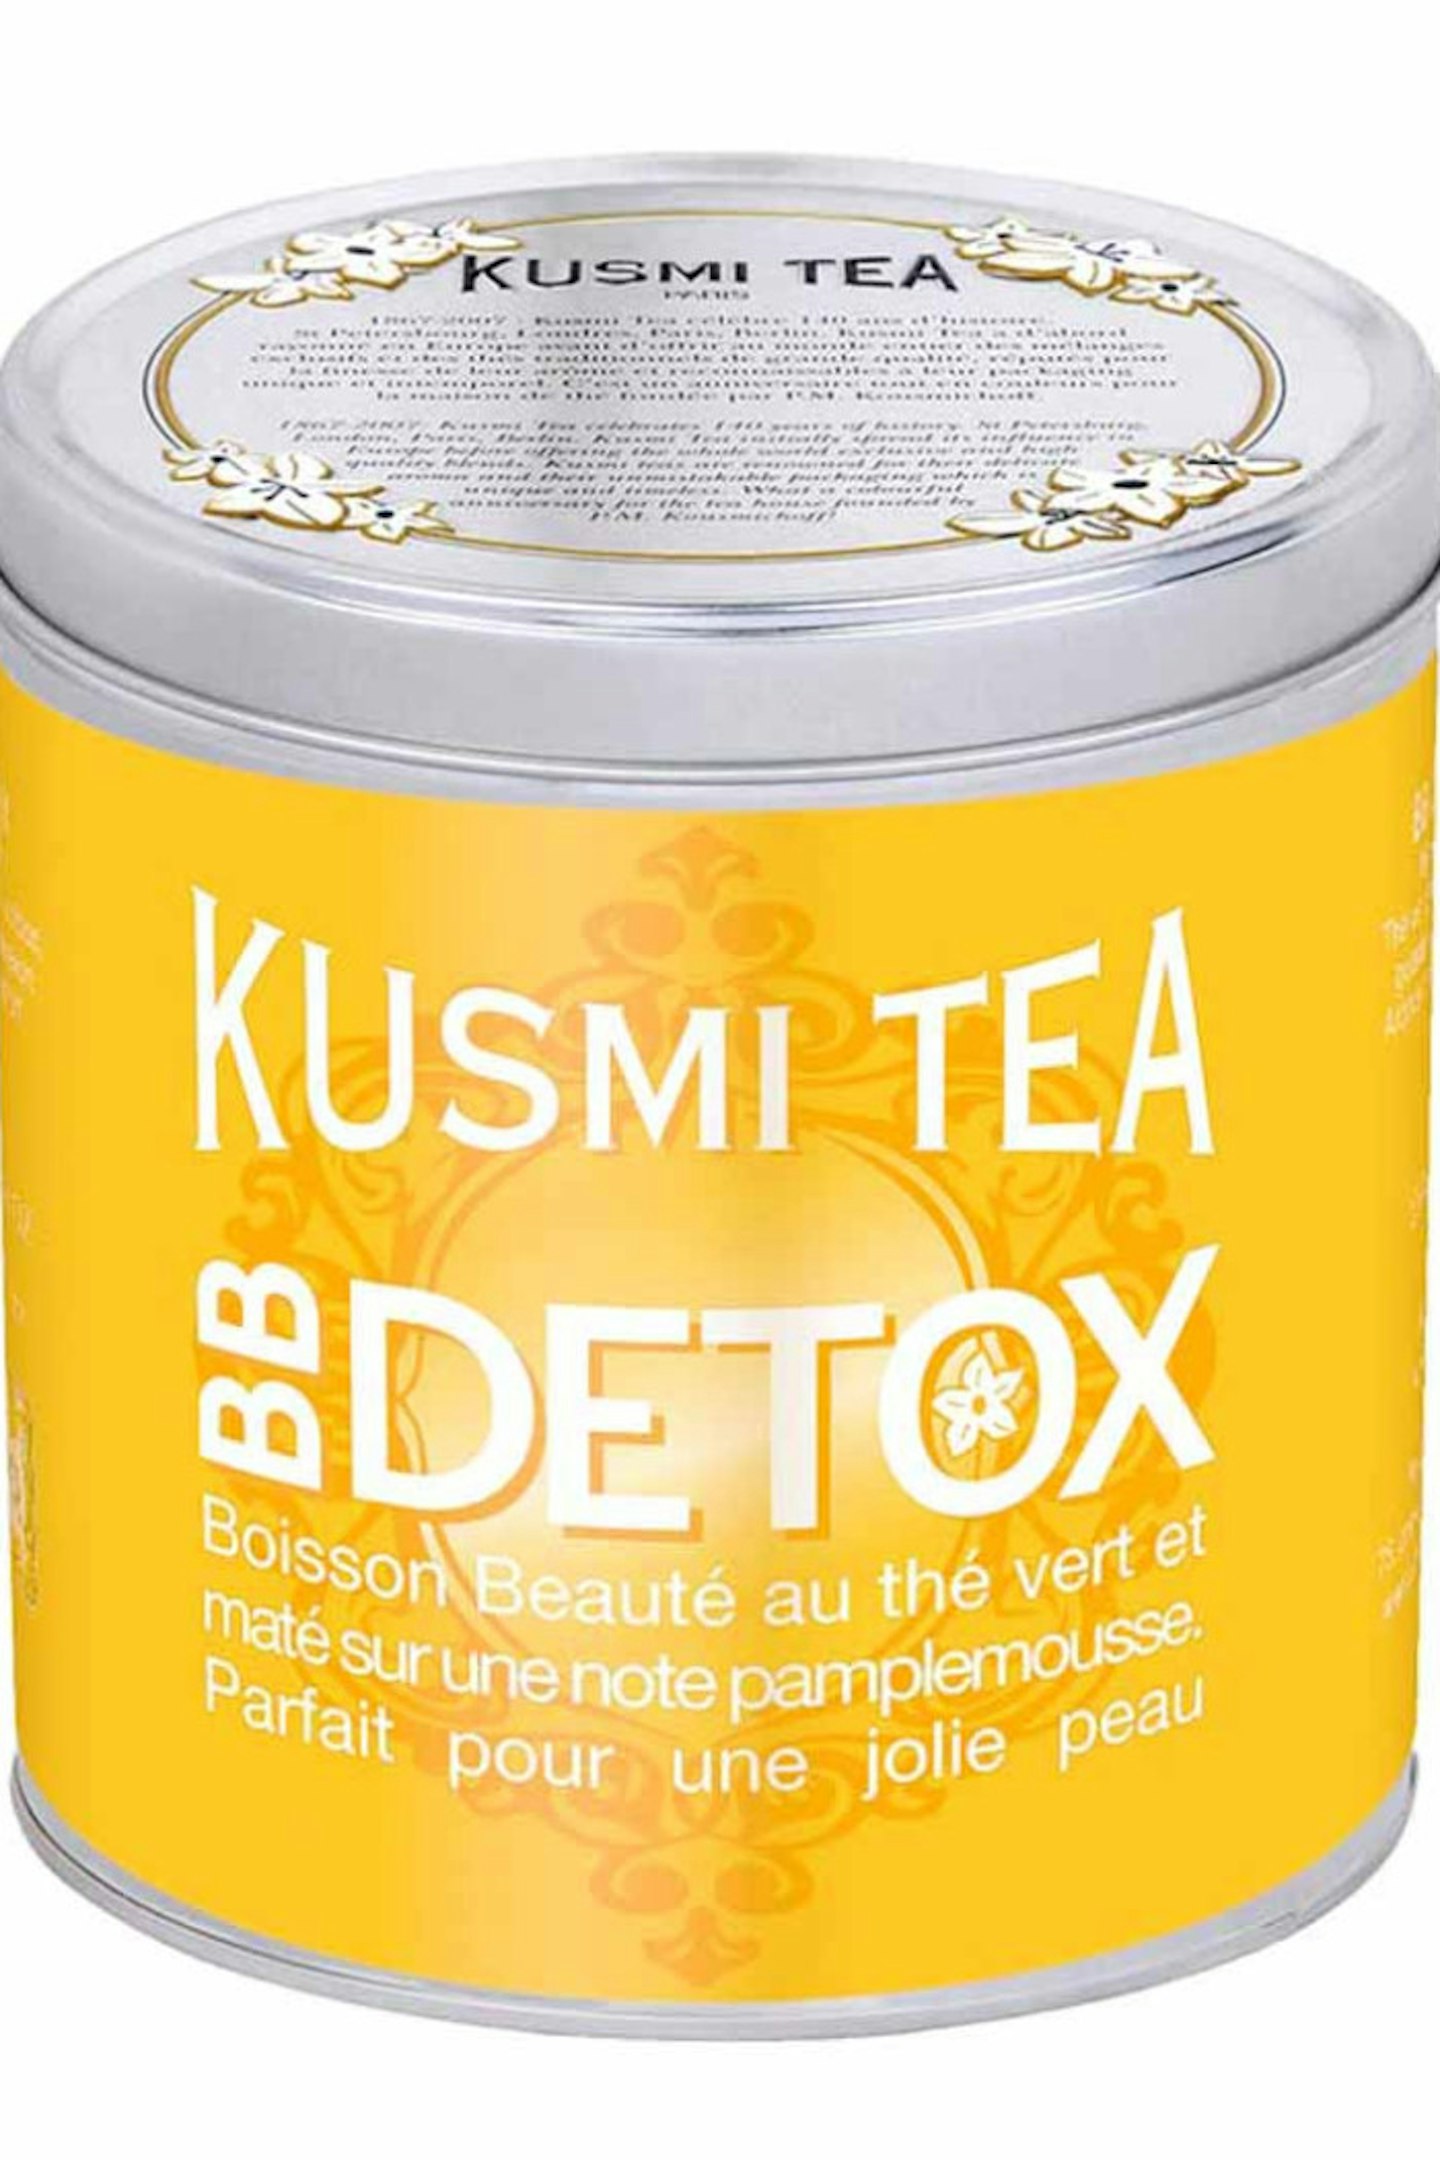 detox tea diet kendall jenner 6